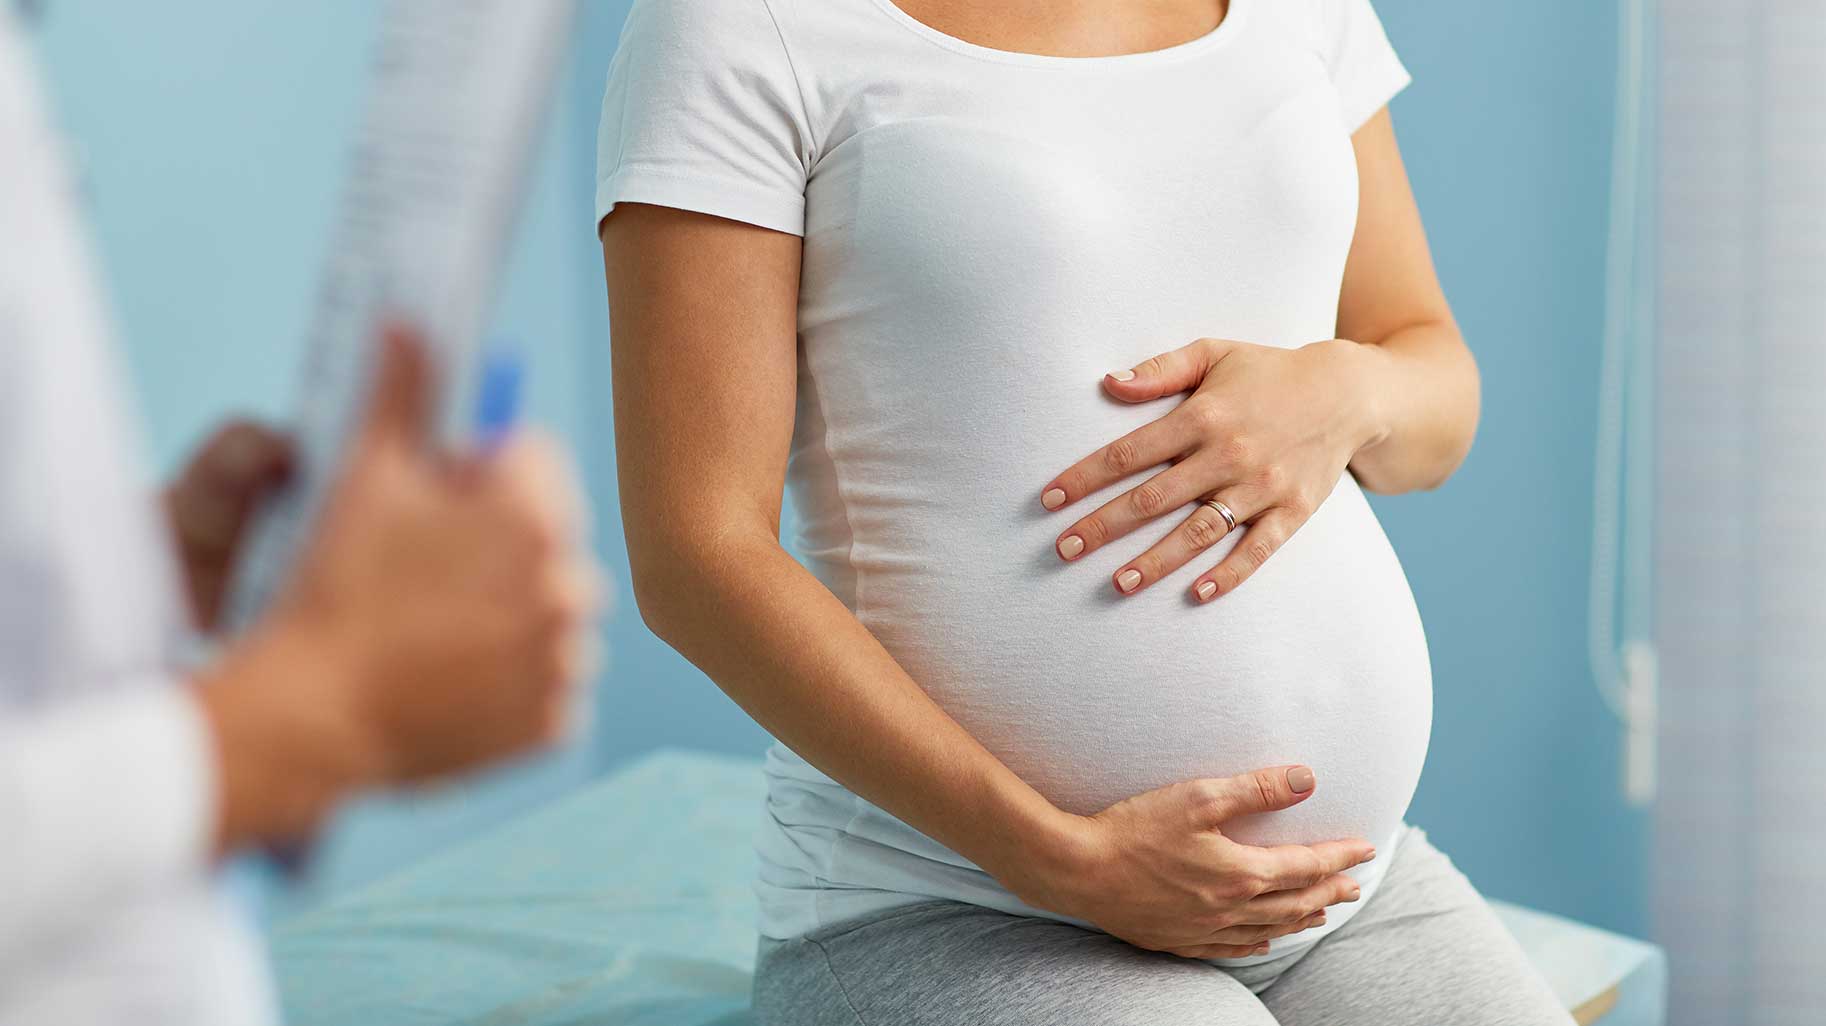 Ssri Antidepressants Pregnancy Risks Safety